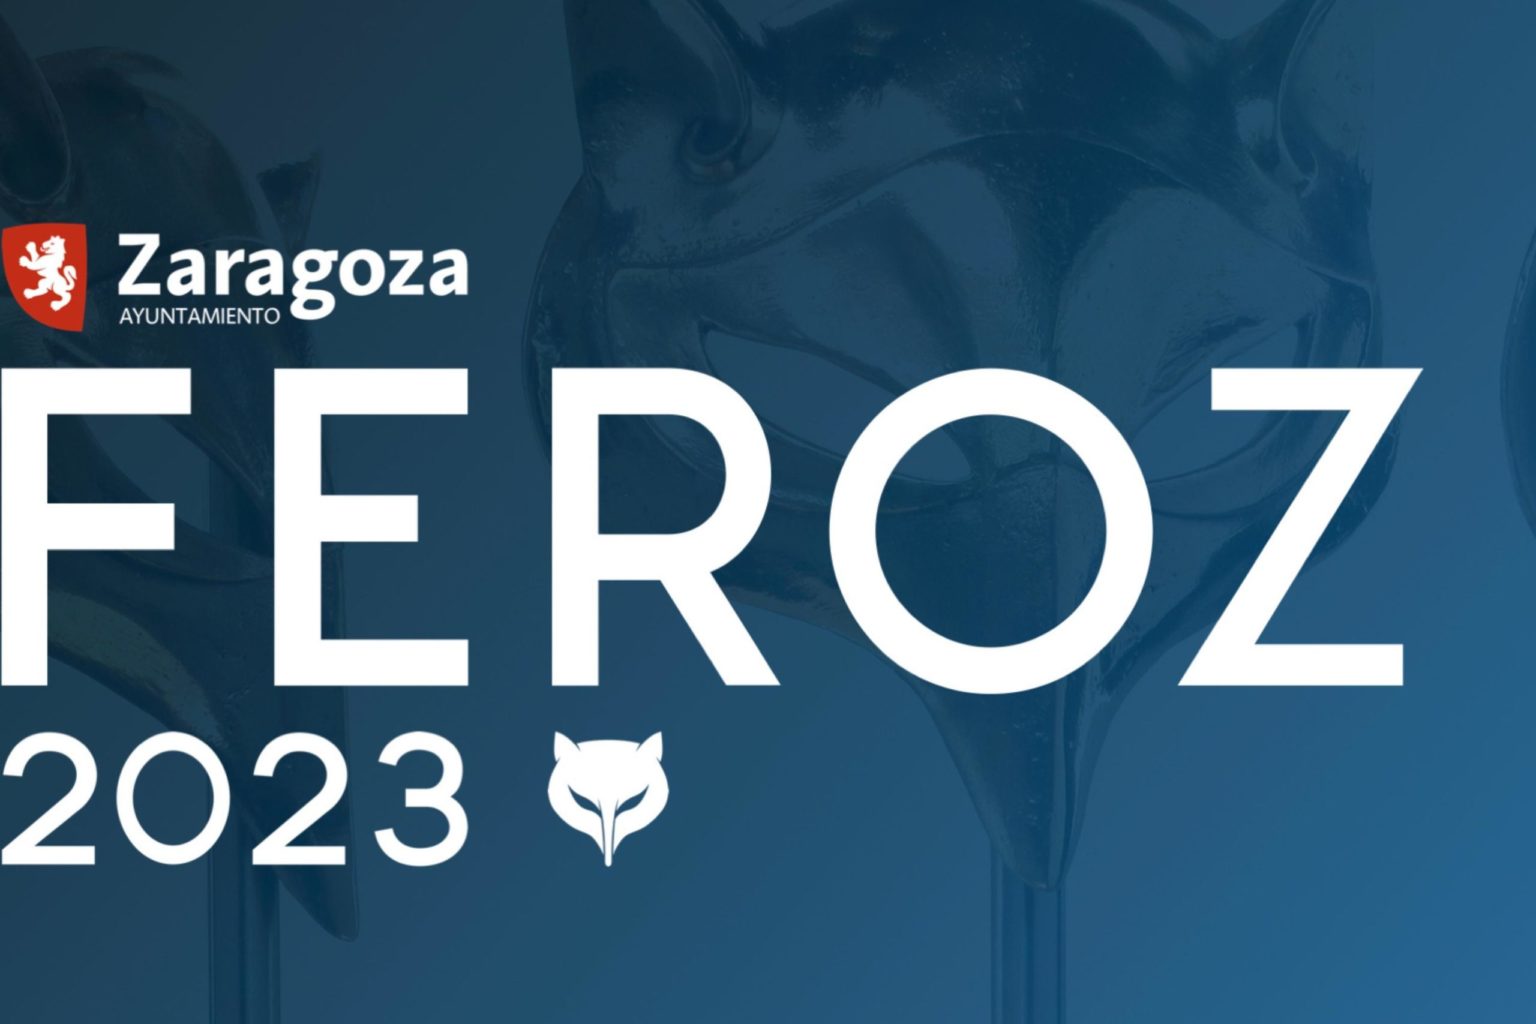 Los mejores alojamientos para disfrutar de los Premios Feroz en Zaragoza